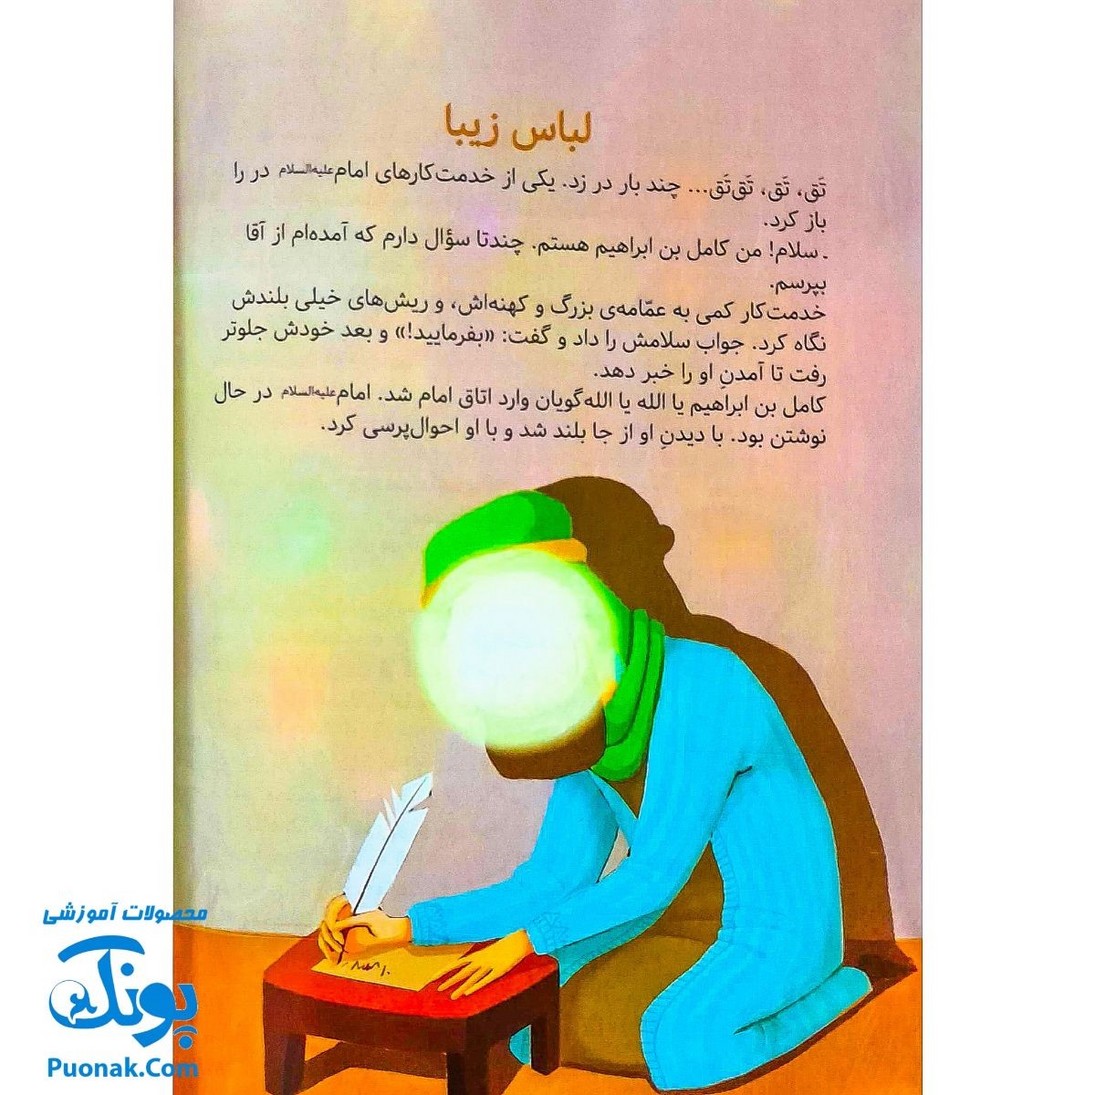 کتاب مژده گل داستان هایی از زندگی امام حسن عسگری علیه السلام